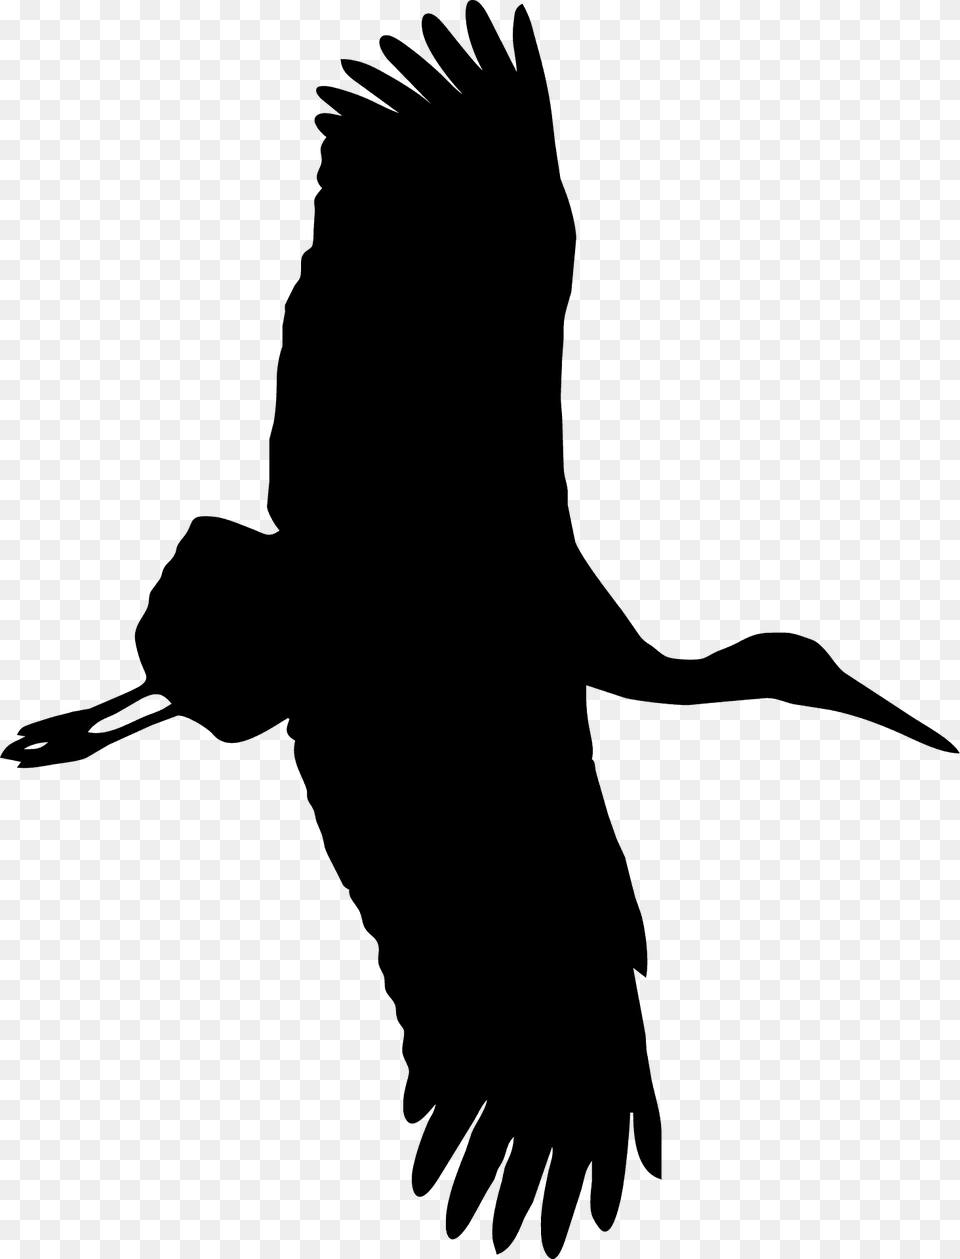 Stork Silhouette, Animal, Bird, Crane Bird, Flying Free Png Download